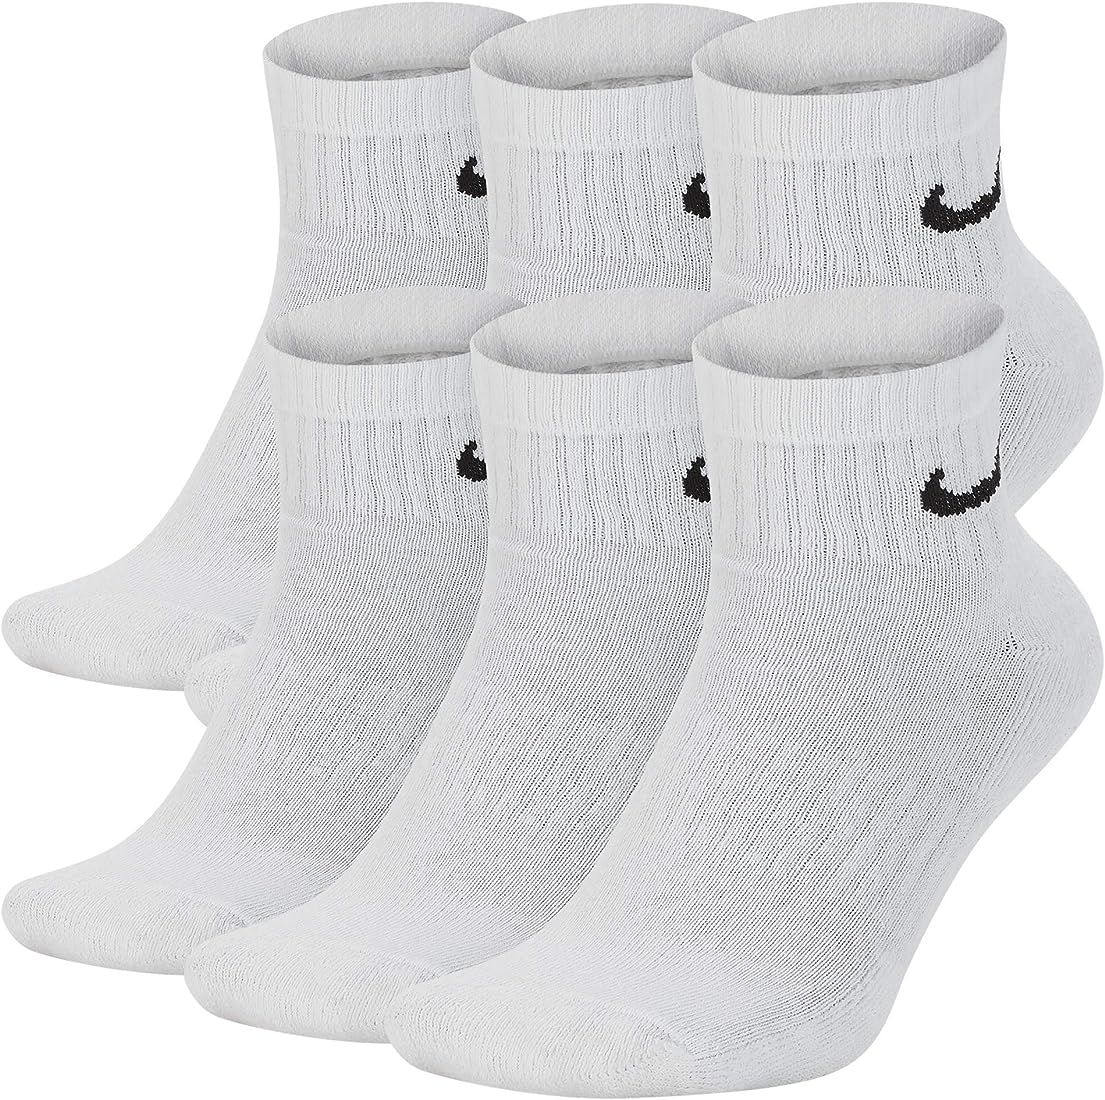 Nike Everyday Cushion Ankle Training Socks (6 Pair) | Amazon (US)